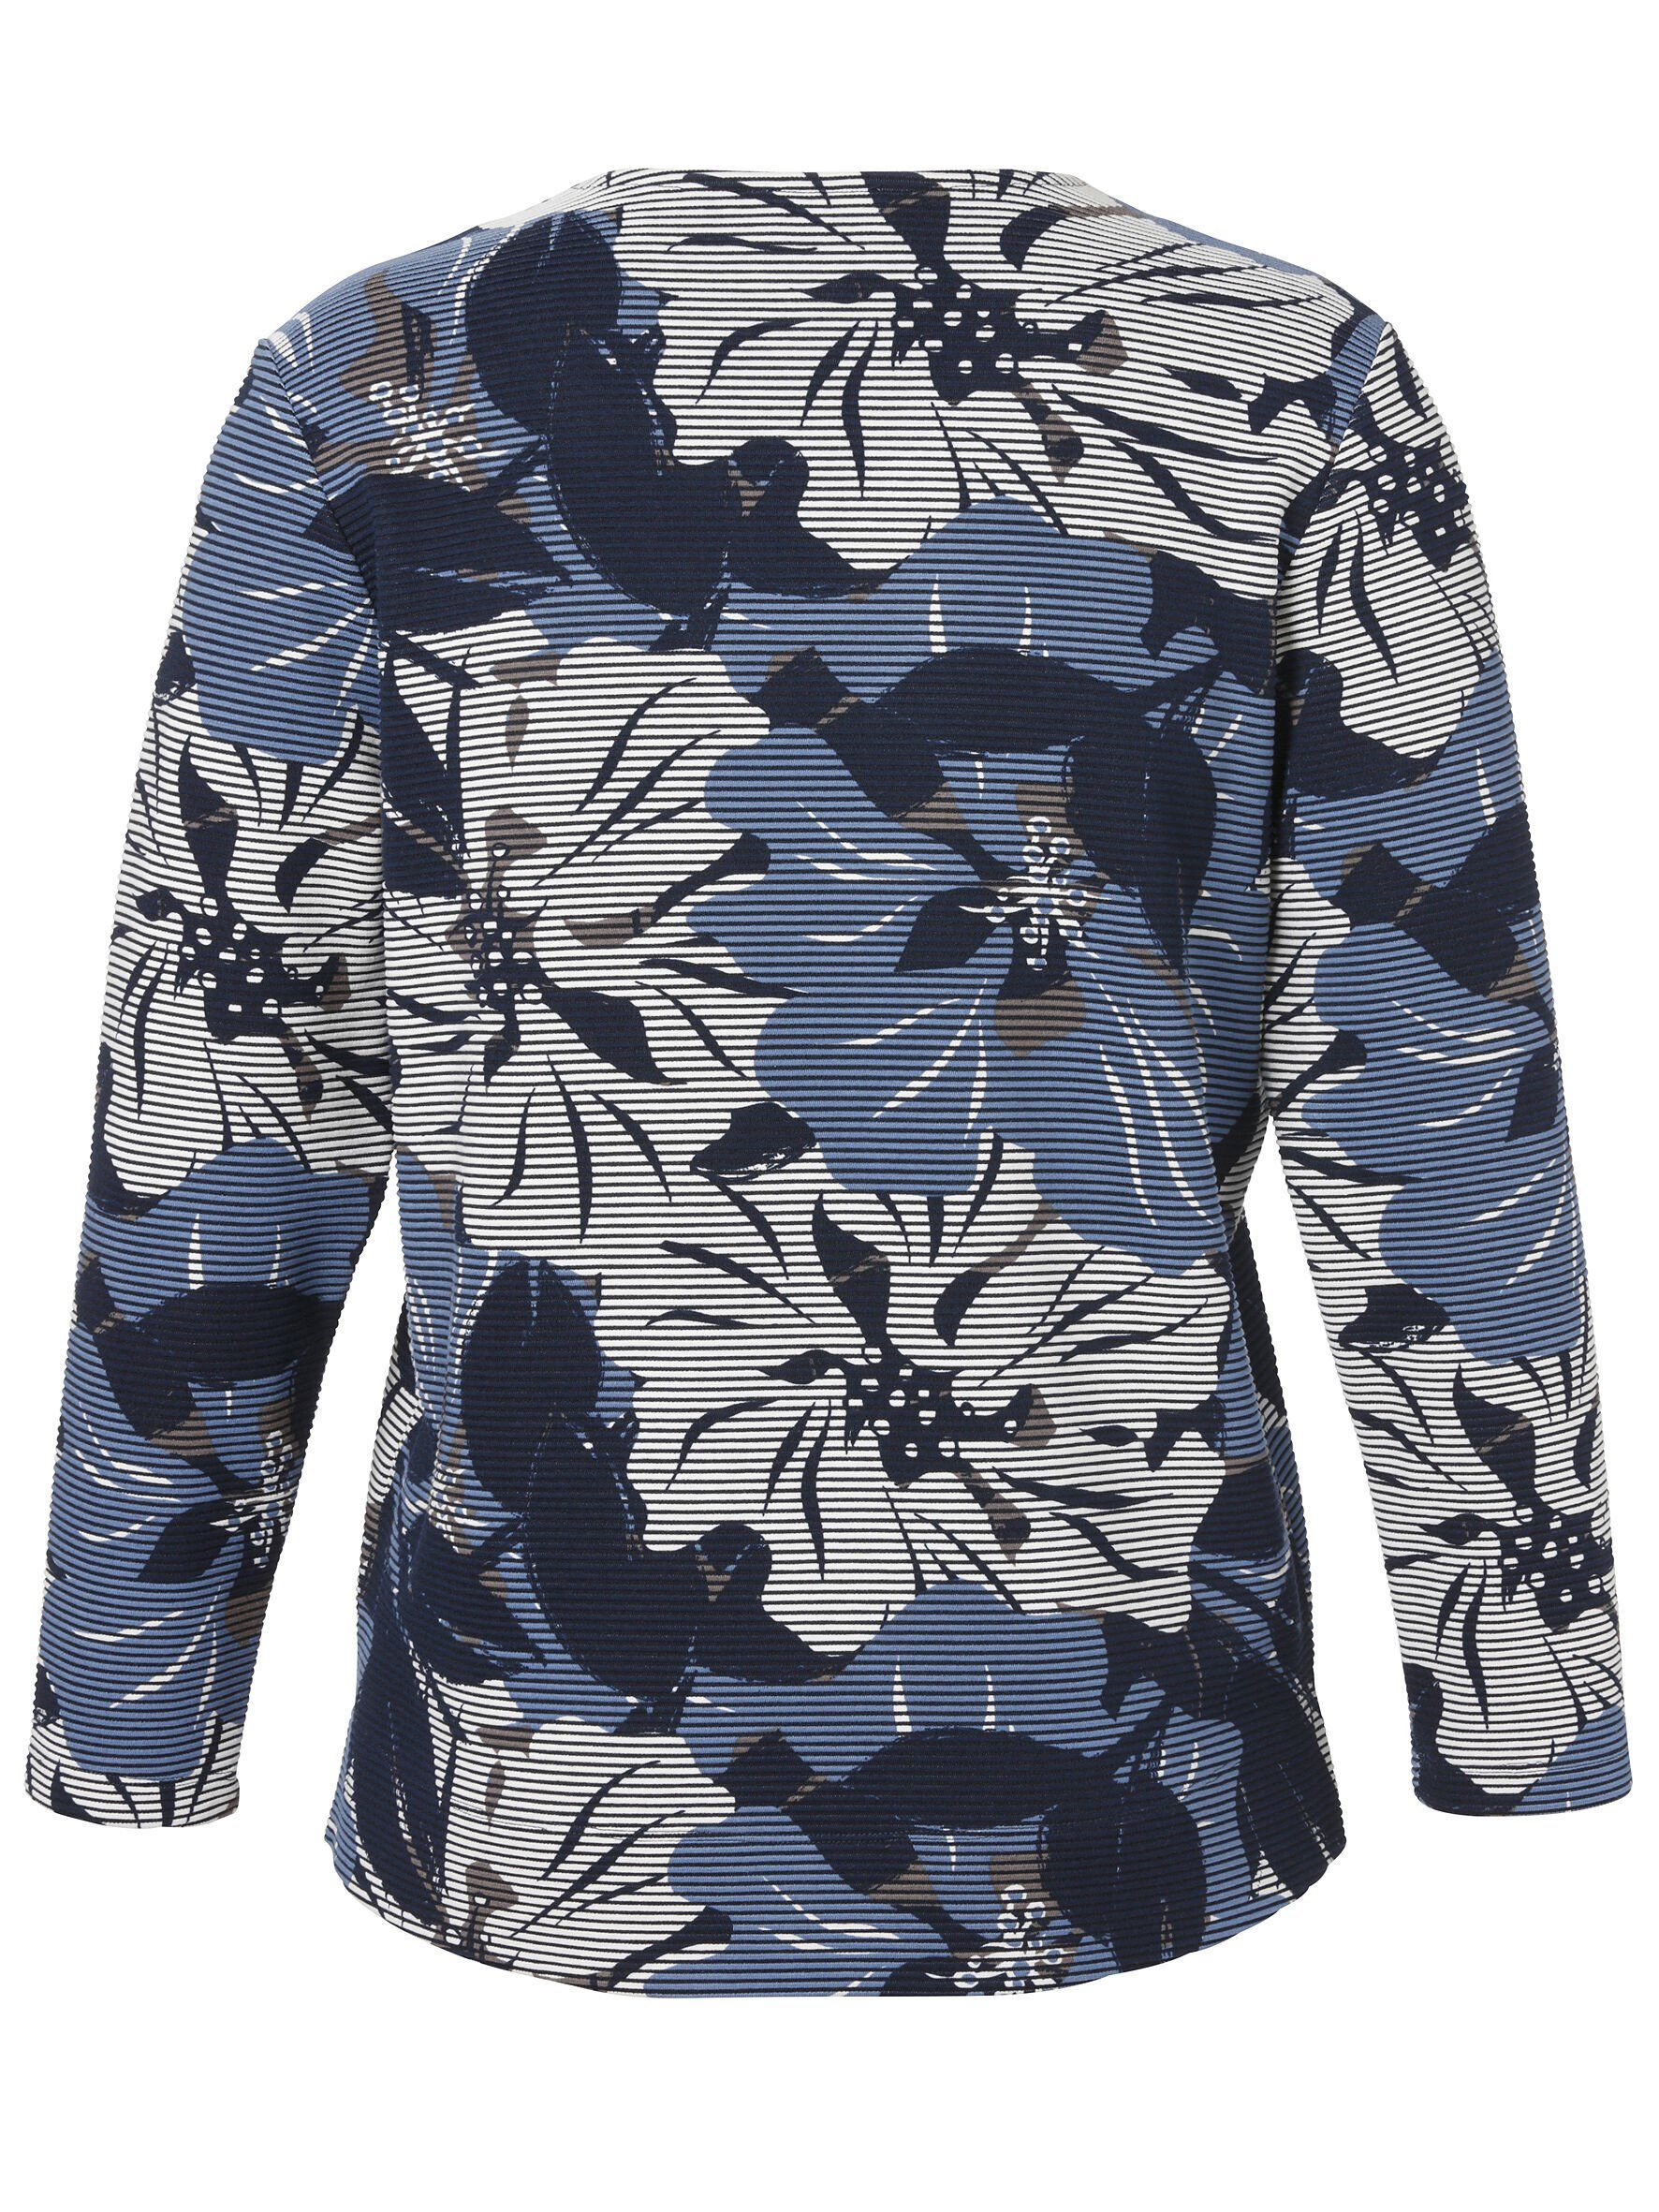 Sweatshirt Blumen-Streifen-Mix APPIA mit DUE VIA